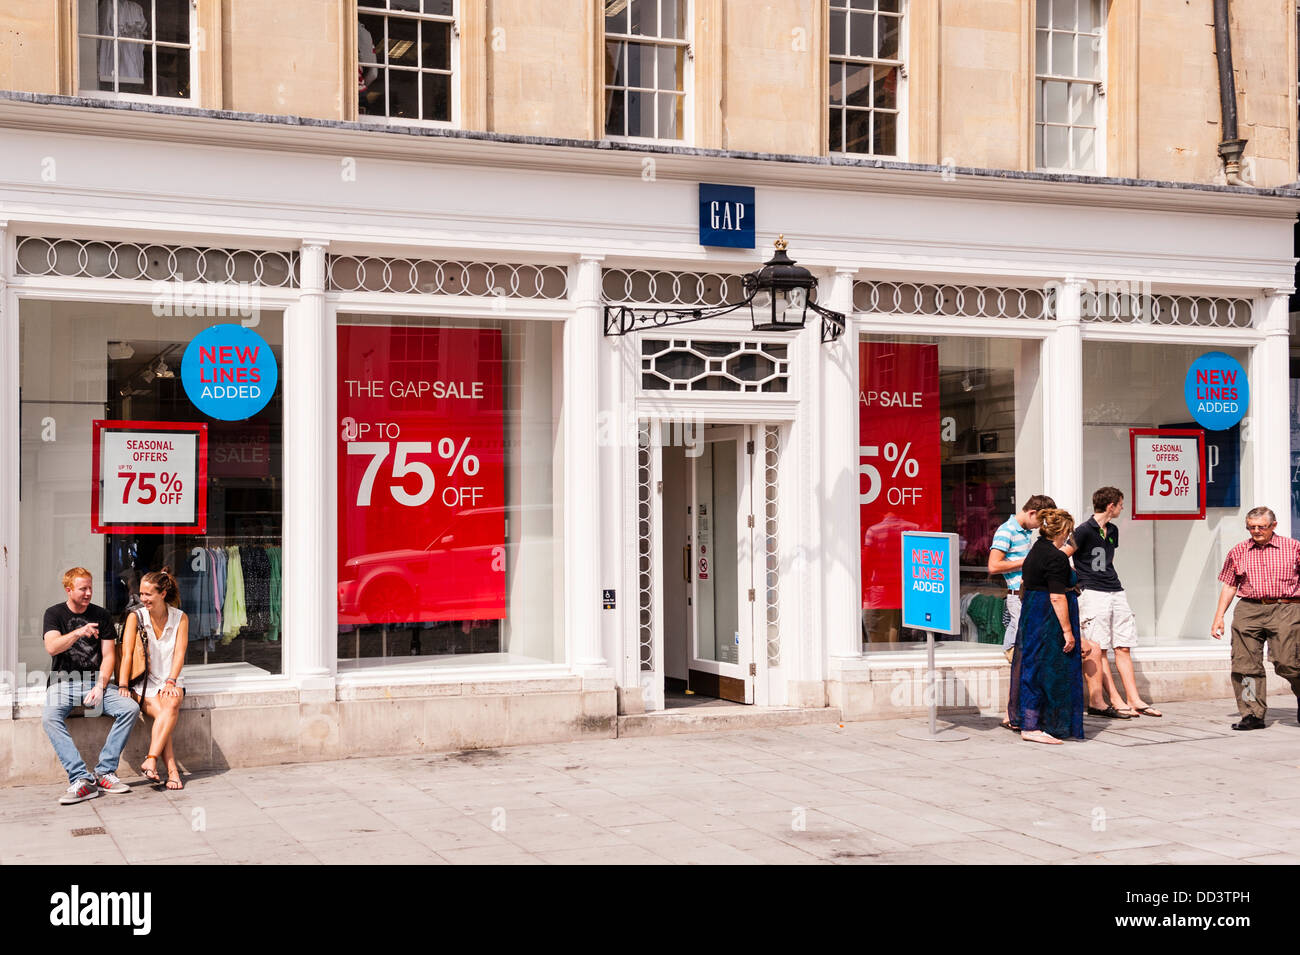 Der Gap Kleidung Shop speichern in Bath, Somerset, England, Großbritannien,  Uk Stockfotografie - Alamy